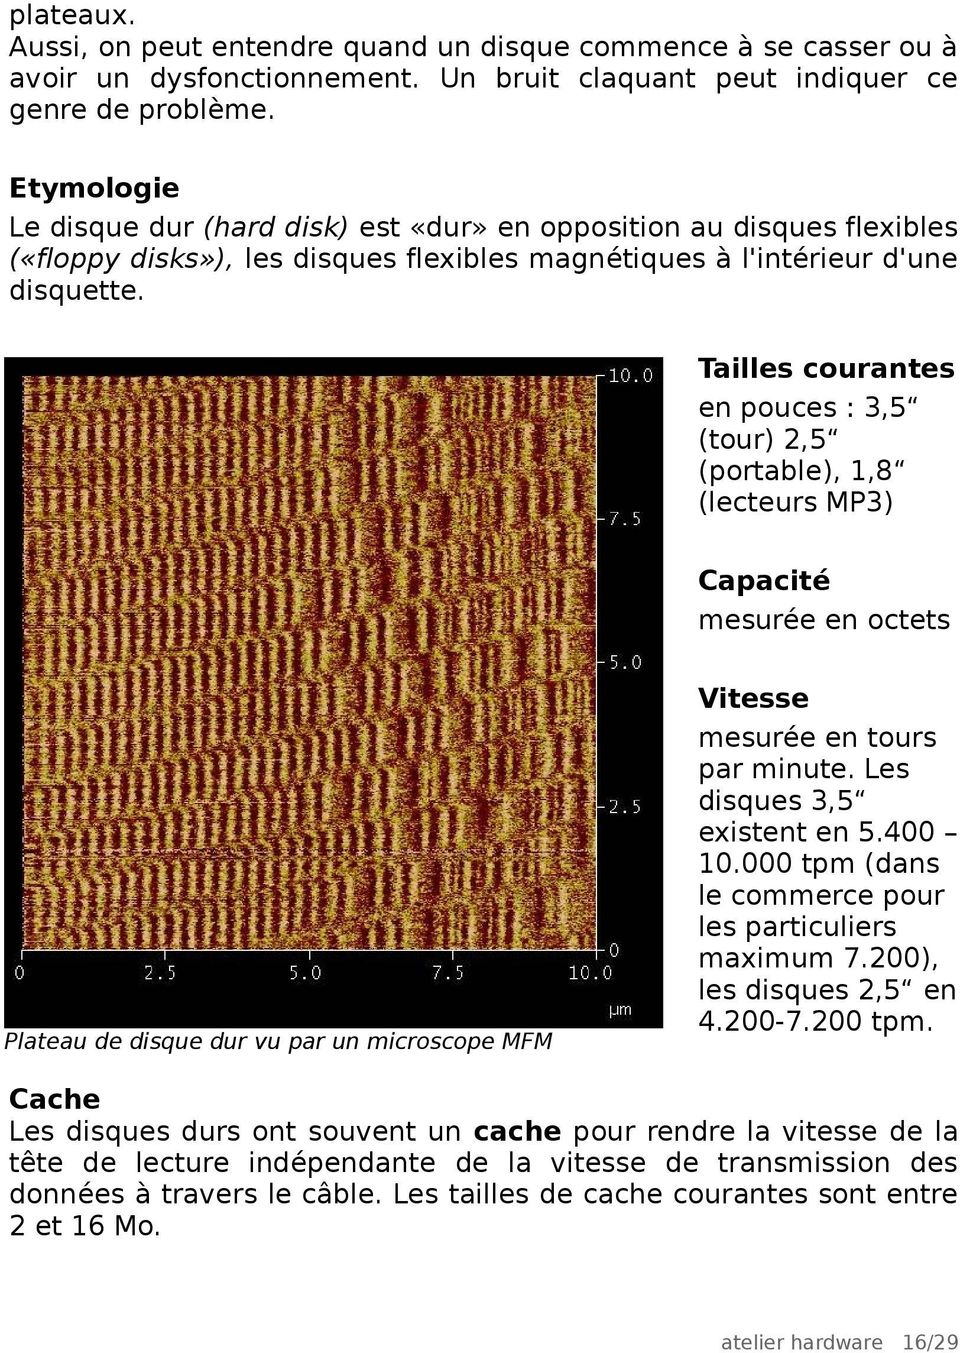 Tailles courantes en pouces : 3,5 (tour) 2,5 (portable), 1,8 (lecteurs MP3) Capacité mesurée en octets Plateau de disque dur vu par un microscope MFM Vitesse mesurée en tours par minute.